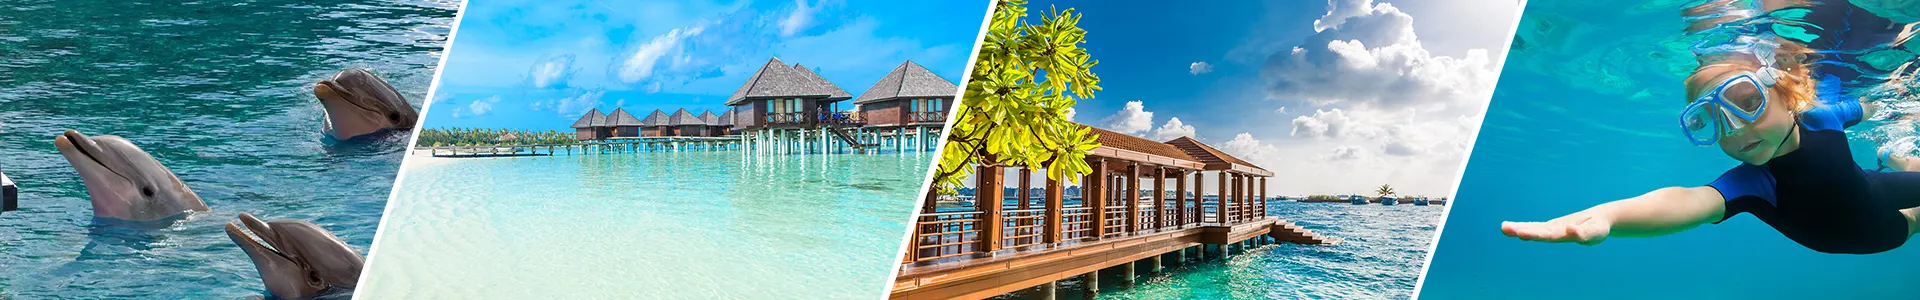 Maldives Leisure Tour Packages